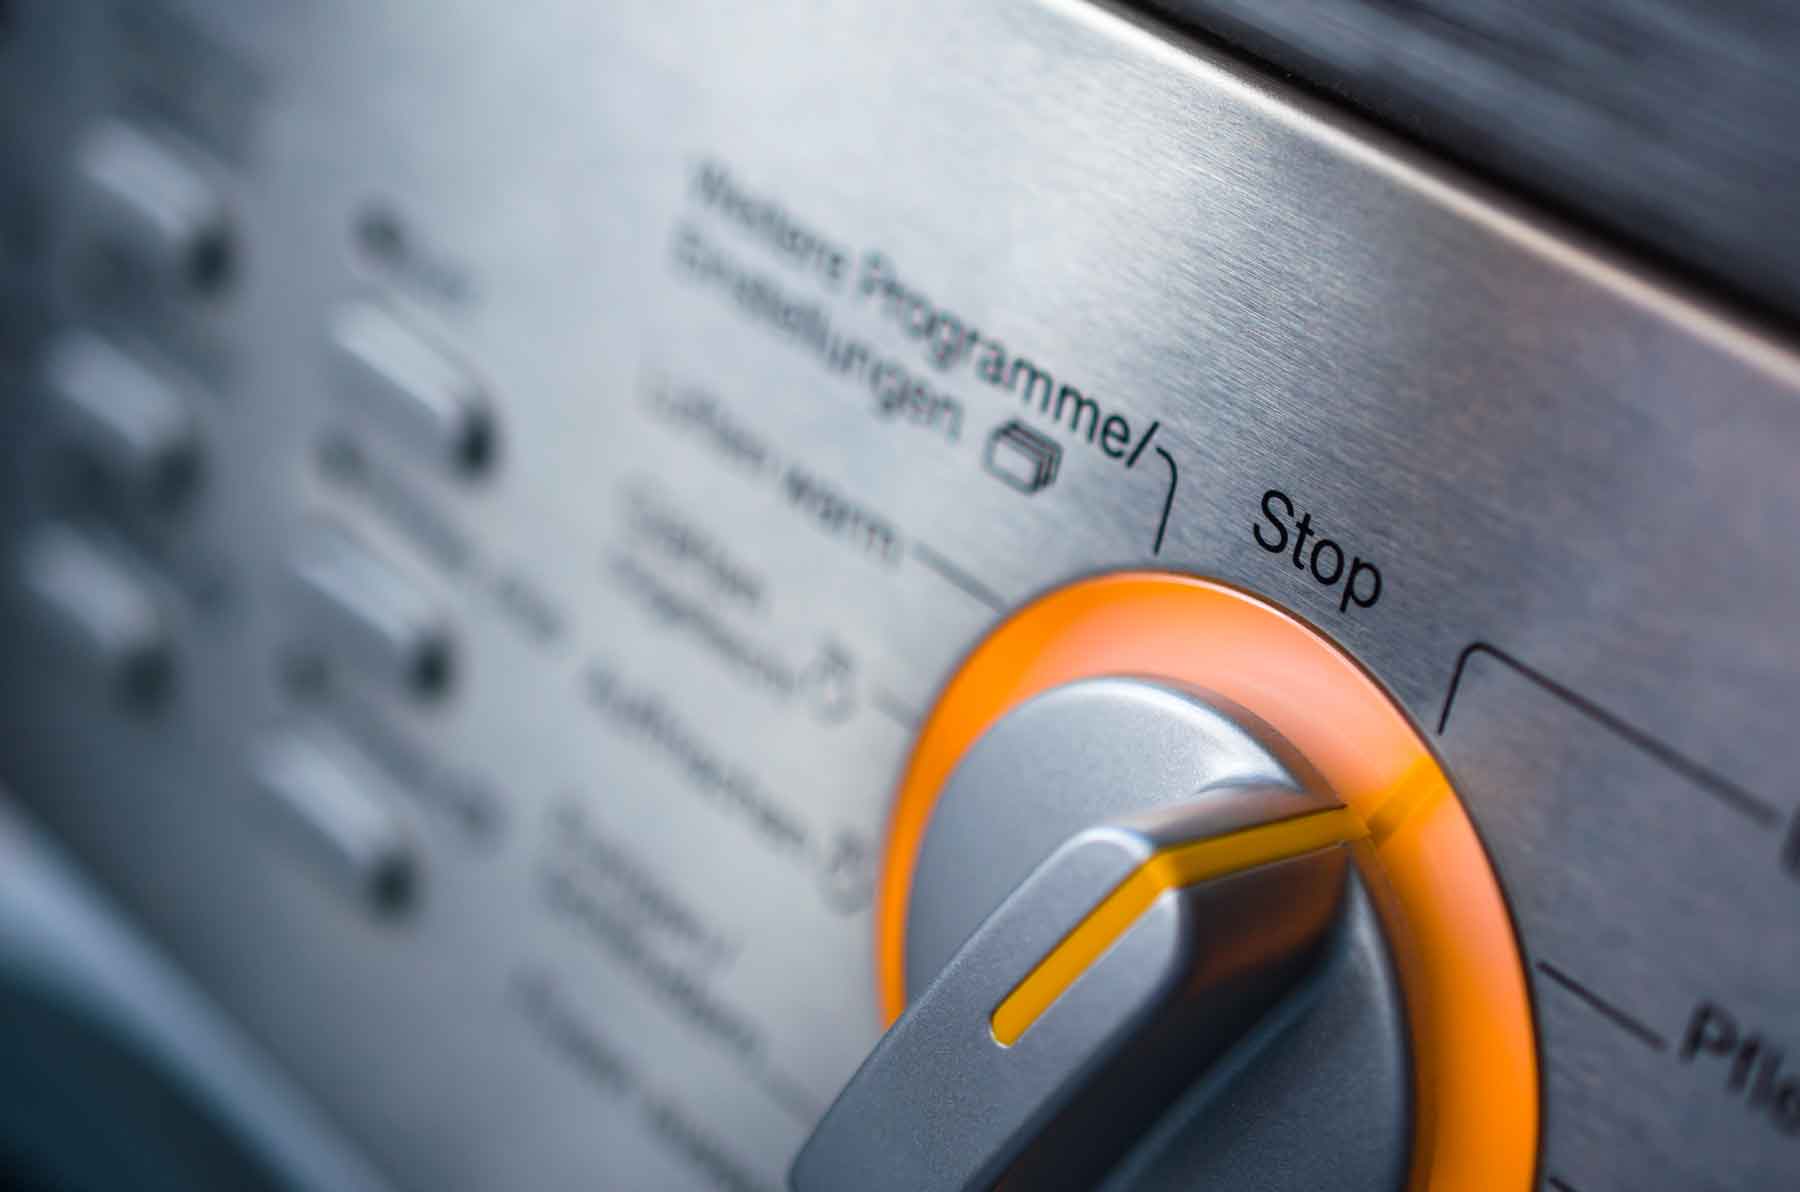 Запчасти для восстановления стиральной машинки вы найдете на нашем сайте.